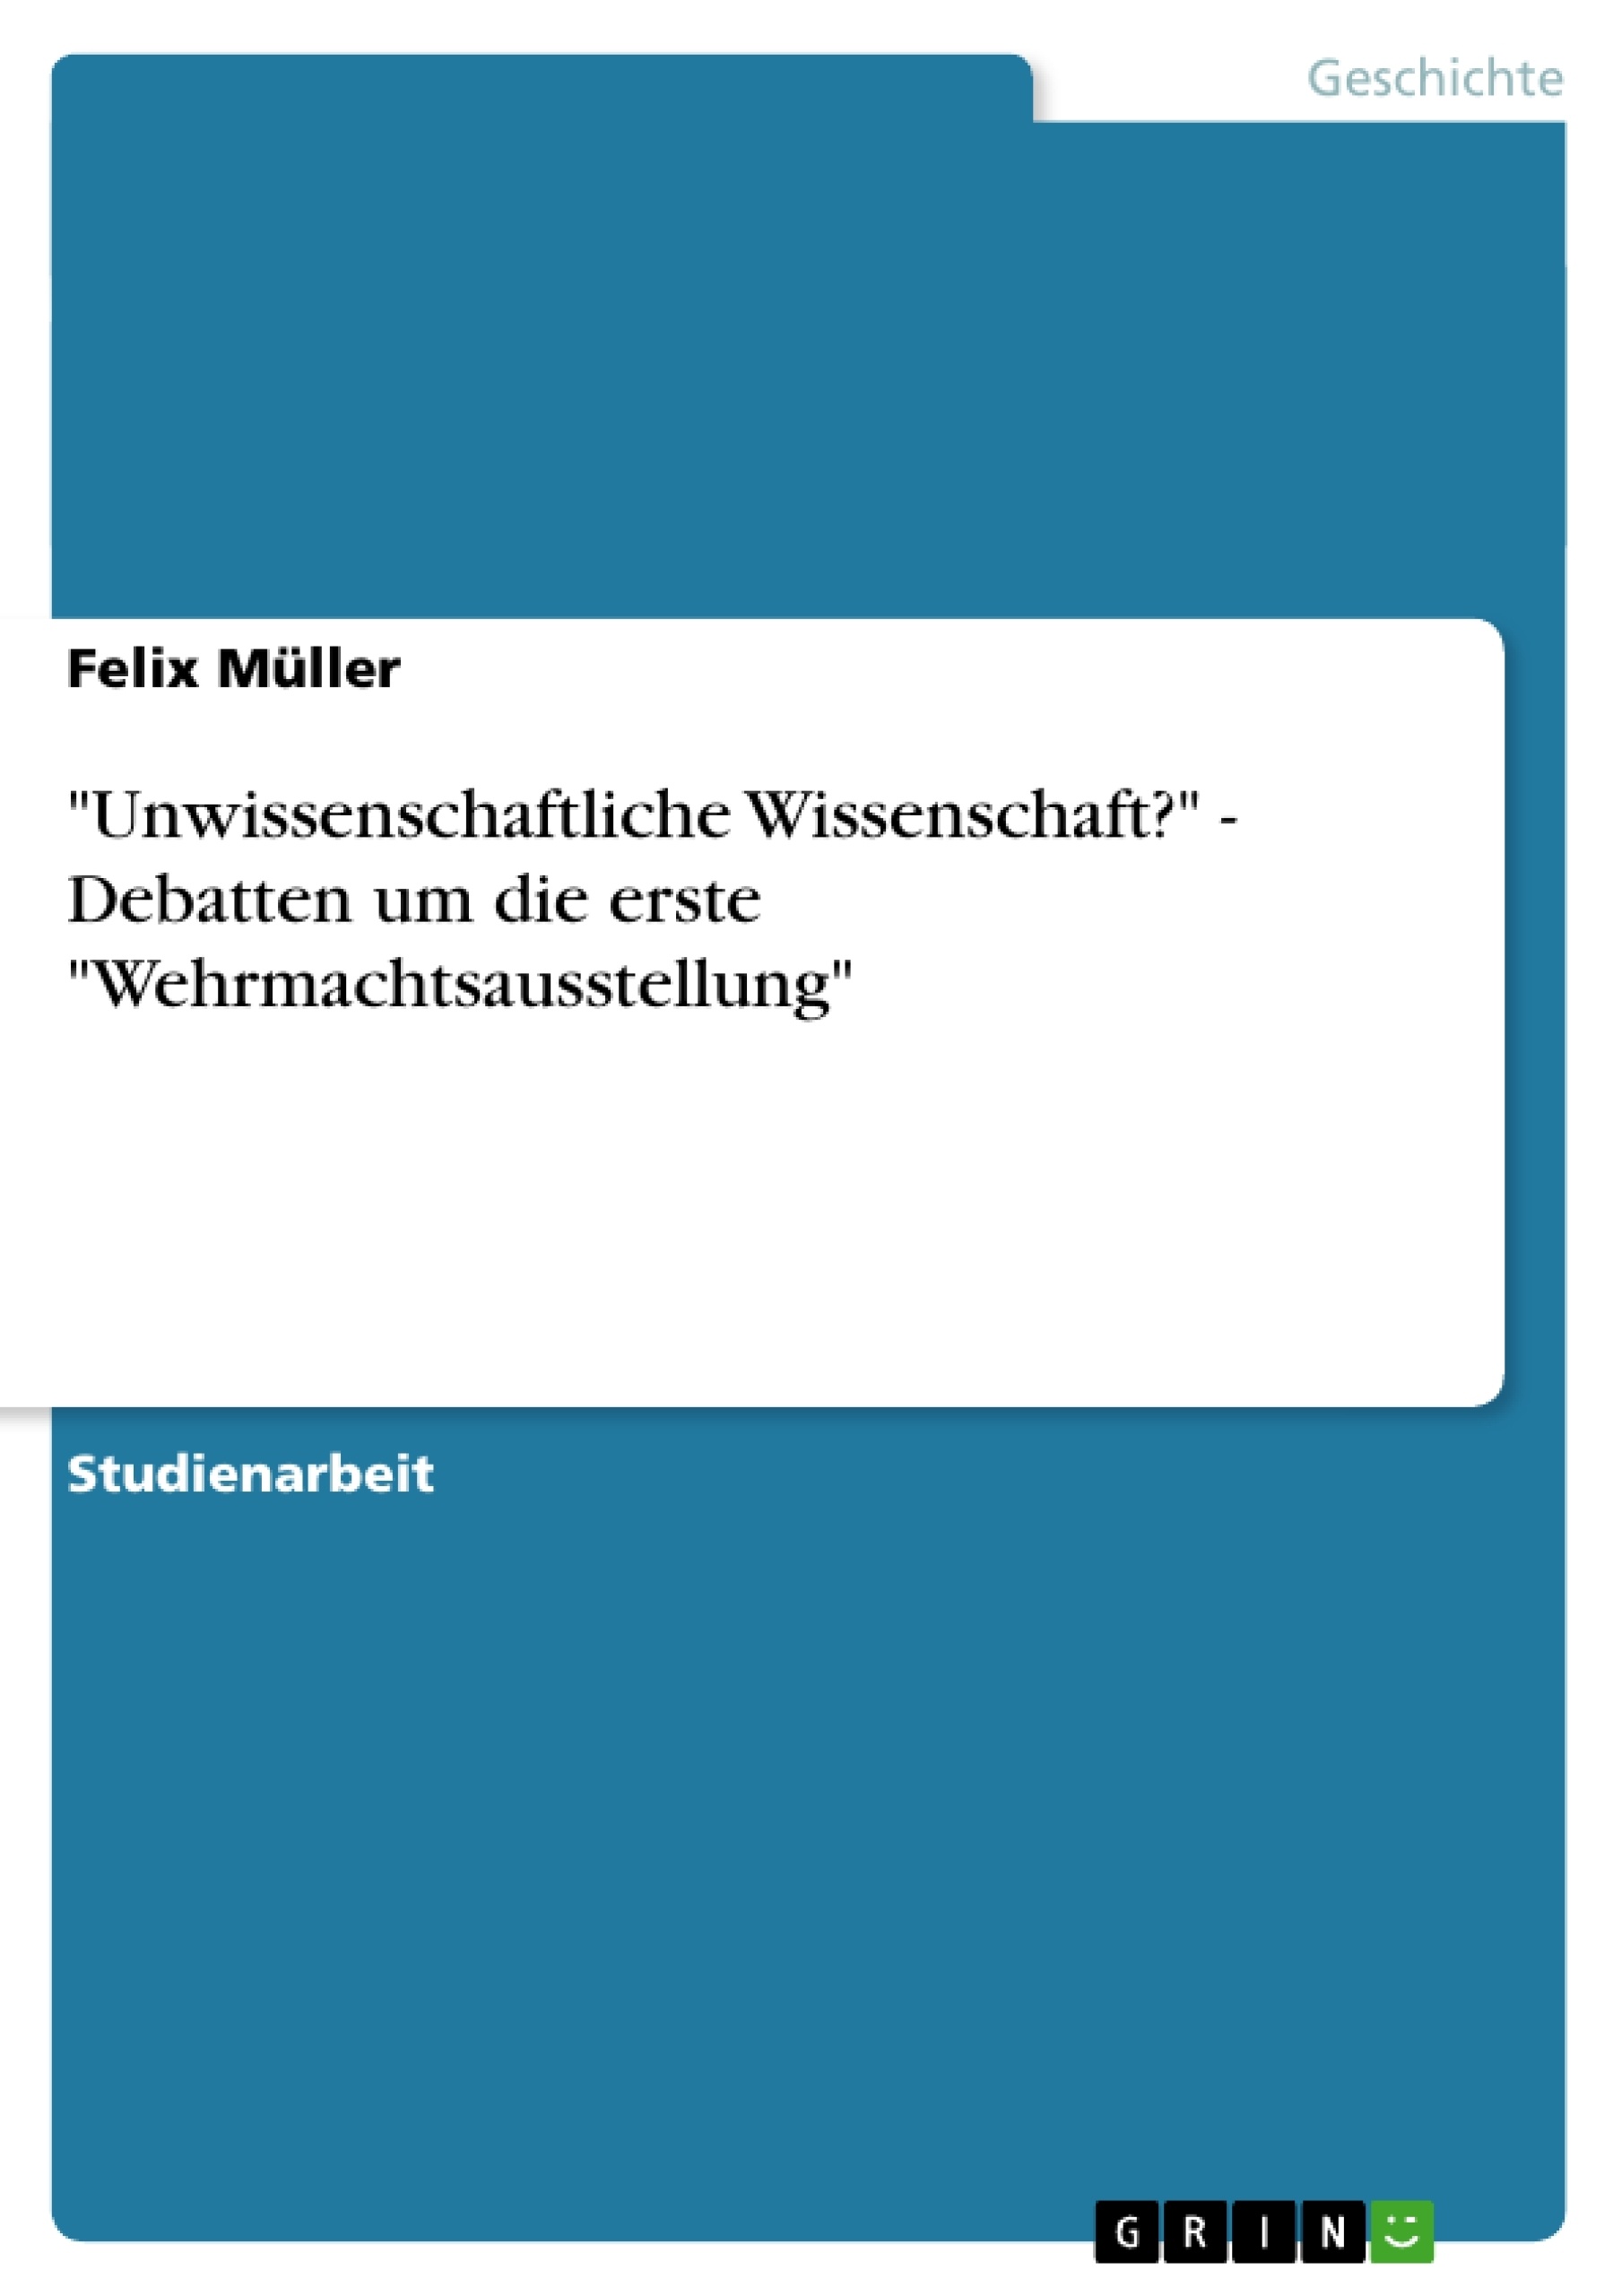 Title: "Unwissenschaftliche Wissenschaft?" - Debatten um die erste "Wehrmachtsausstellung"